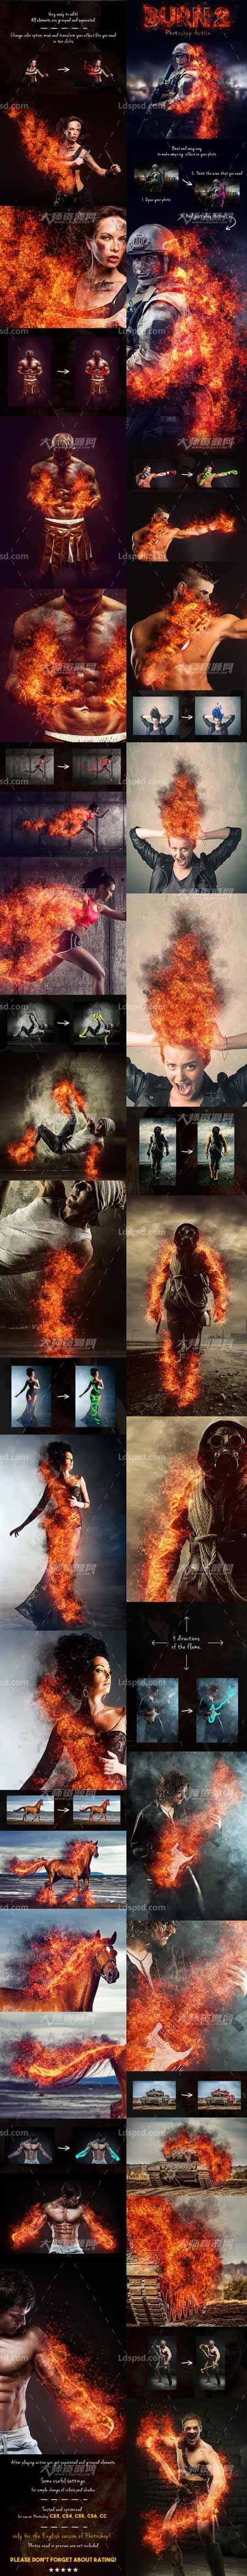 Burn 2 Photoshop Action,极品PS动作－逼真的火焰燃烧(第二版)